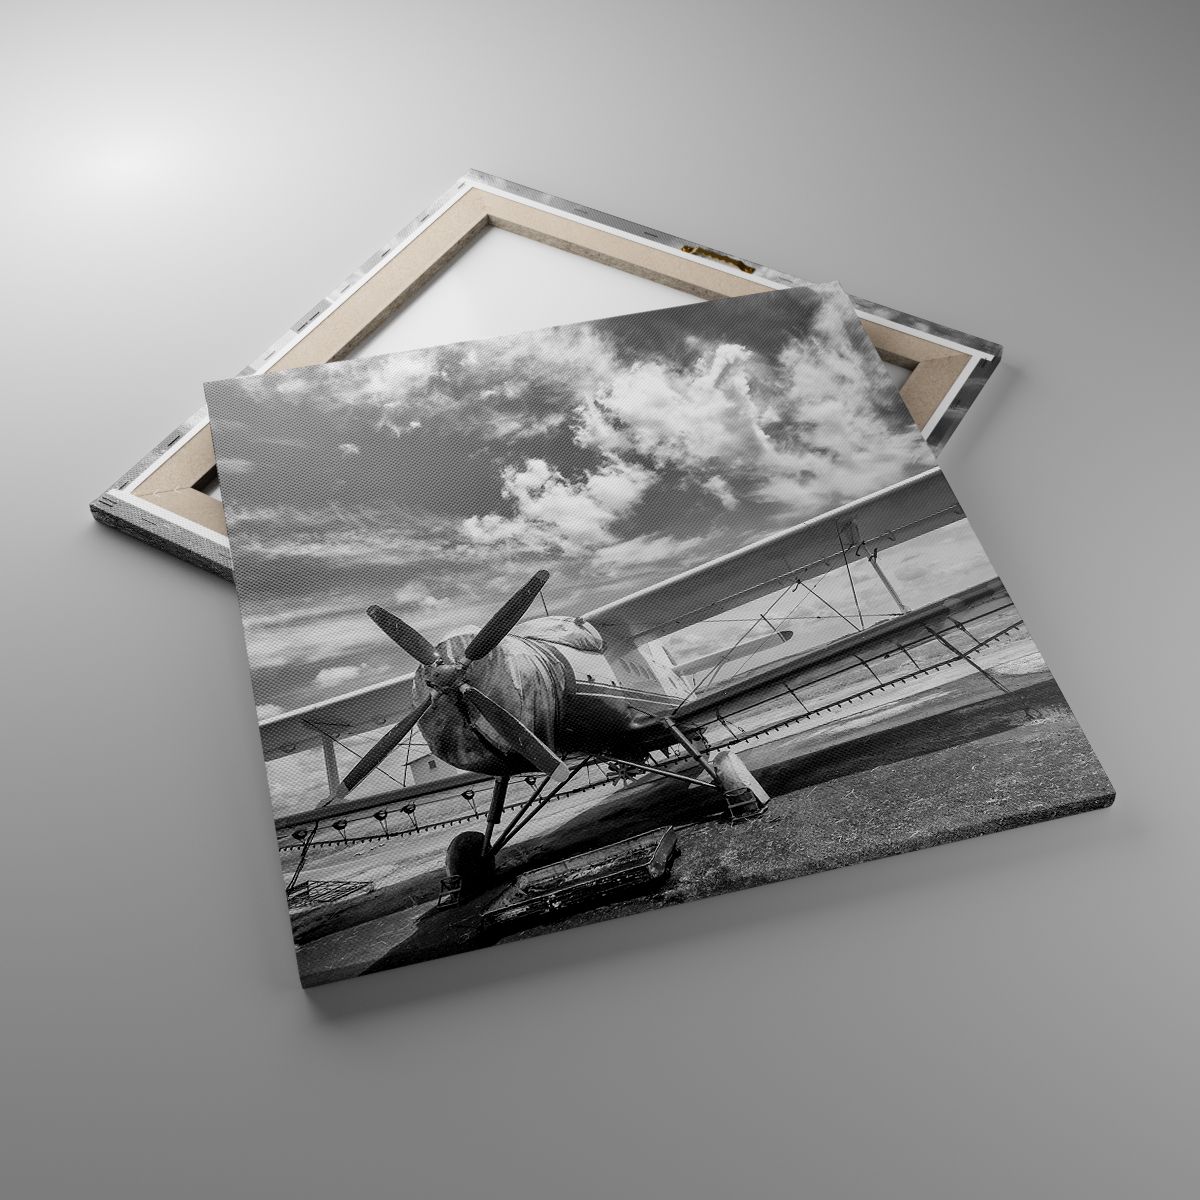 Obrazy Samolot, Obrazy Lotnictwo, Obrazy Czarno-Biały, Obrazy Vintage, Obrazy Śmigło